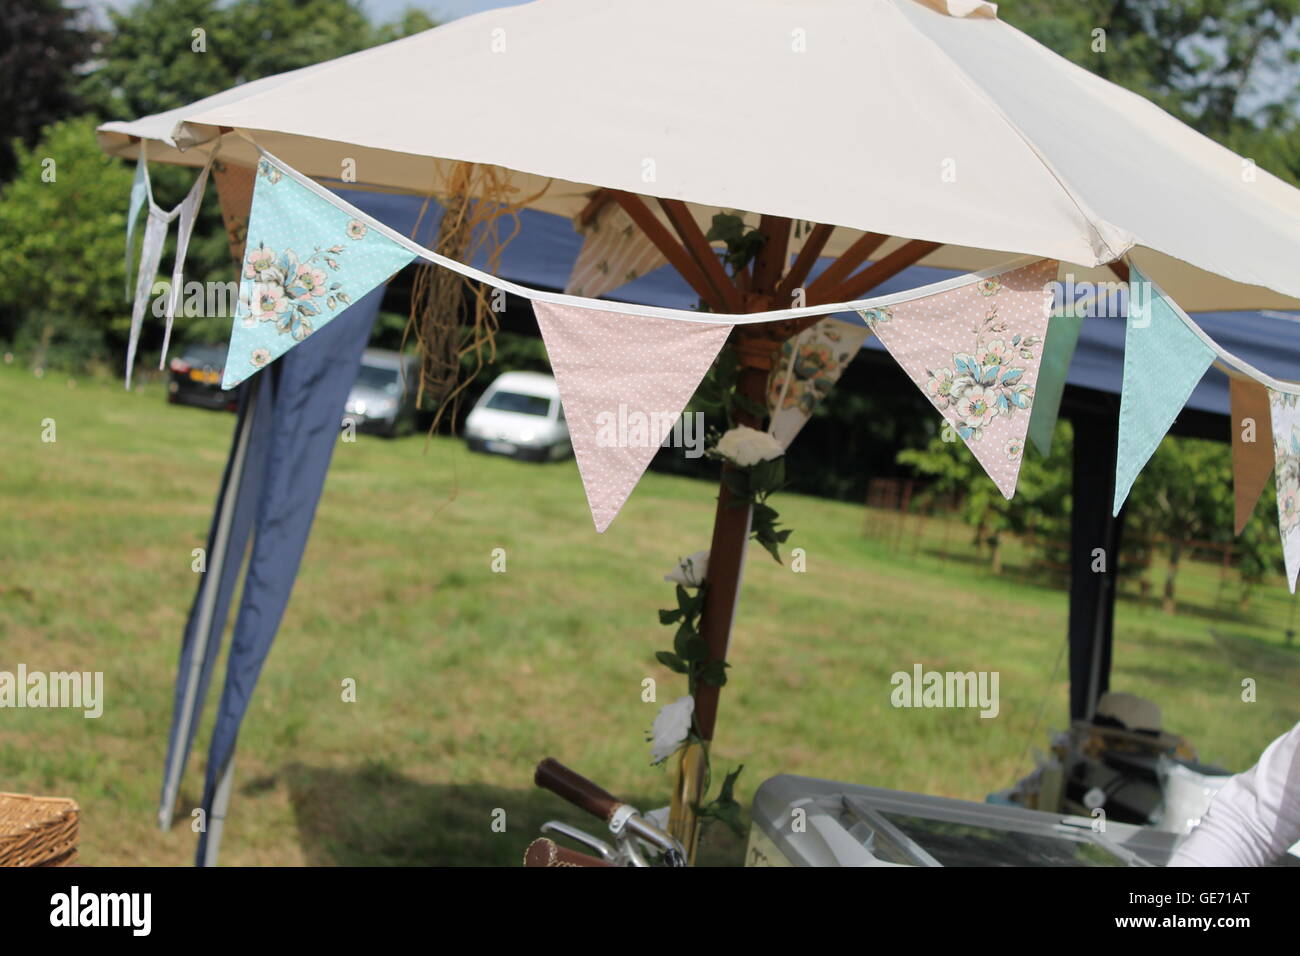 Bunting, estate Wedding, festa, camping, tenda, glamping, garland, decorazione esterna, giardino partito, vintage, bandiere Foto Stock